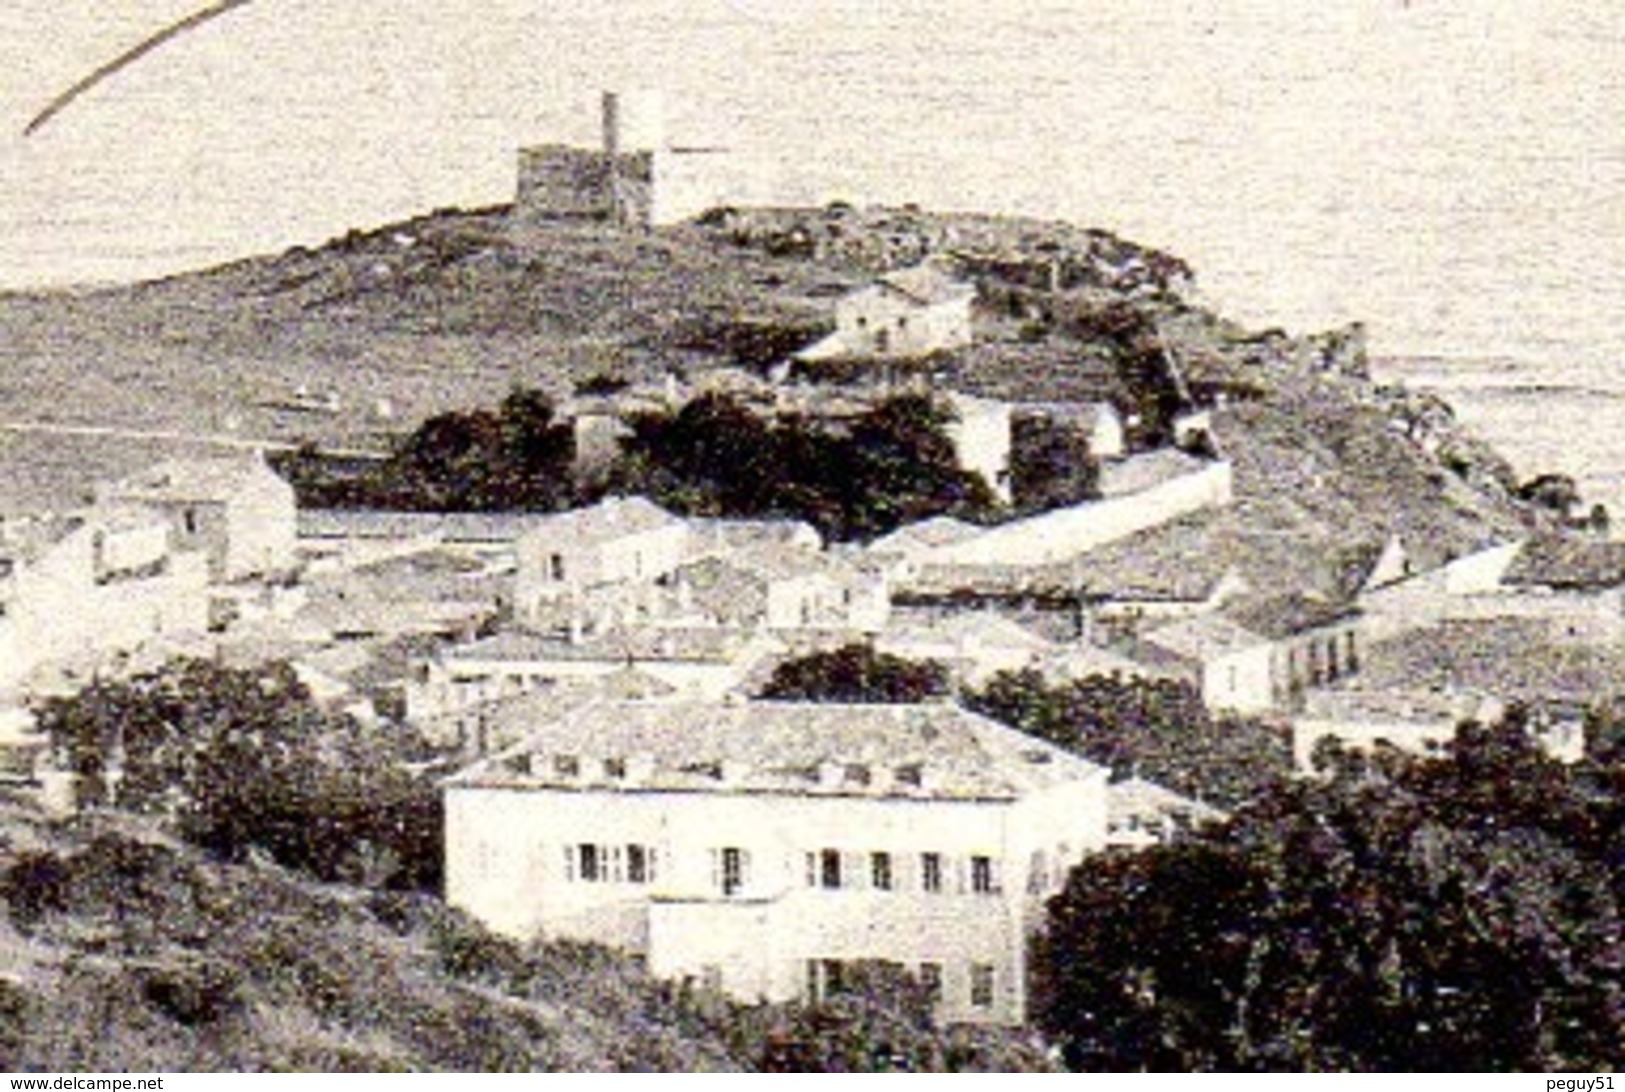 Algérie. La Calle. Le Golfe Avec Le Fort Du Moulin, L'église St. Cyprien Et Le Phare. 1906 - Autres & Non Classés